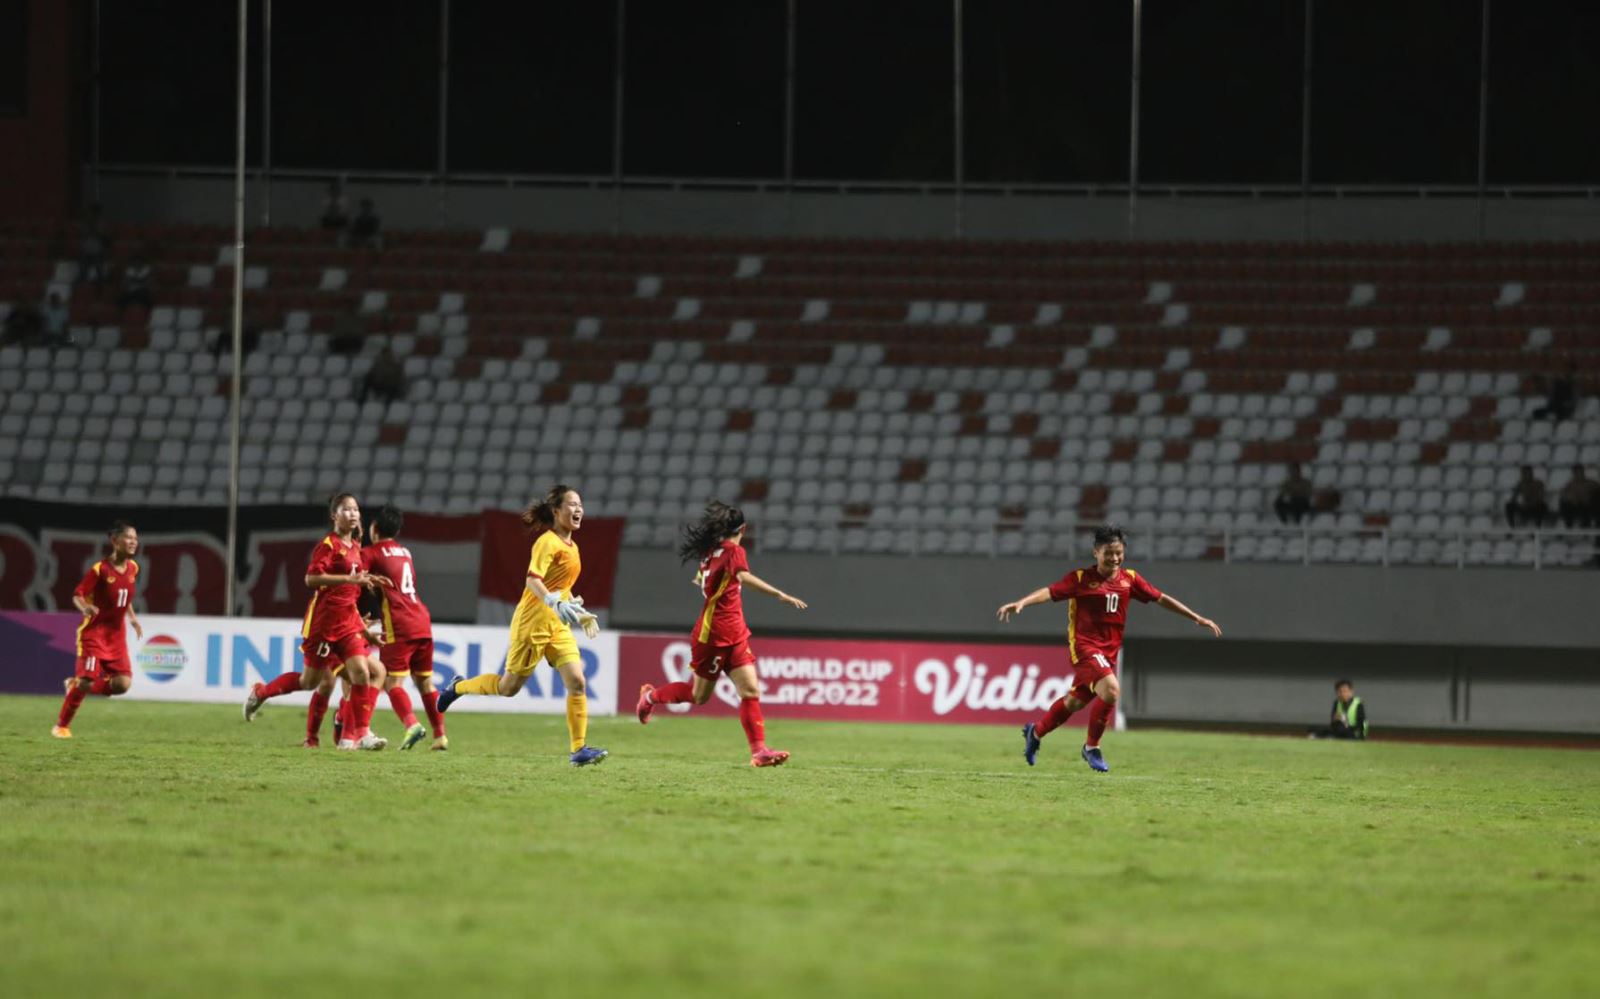   Đội tuyển U18 nữ Việt Nam (áo đỏ) ăn mừng bàn thắng trước U18 nữ Indonesia.